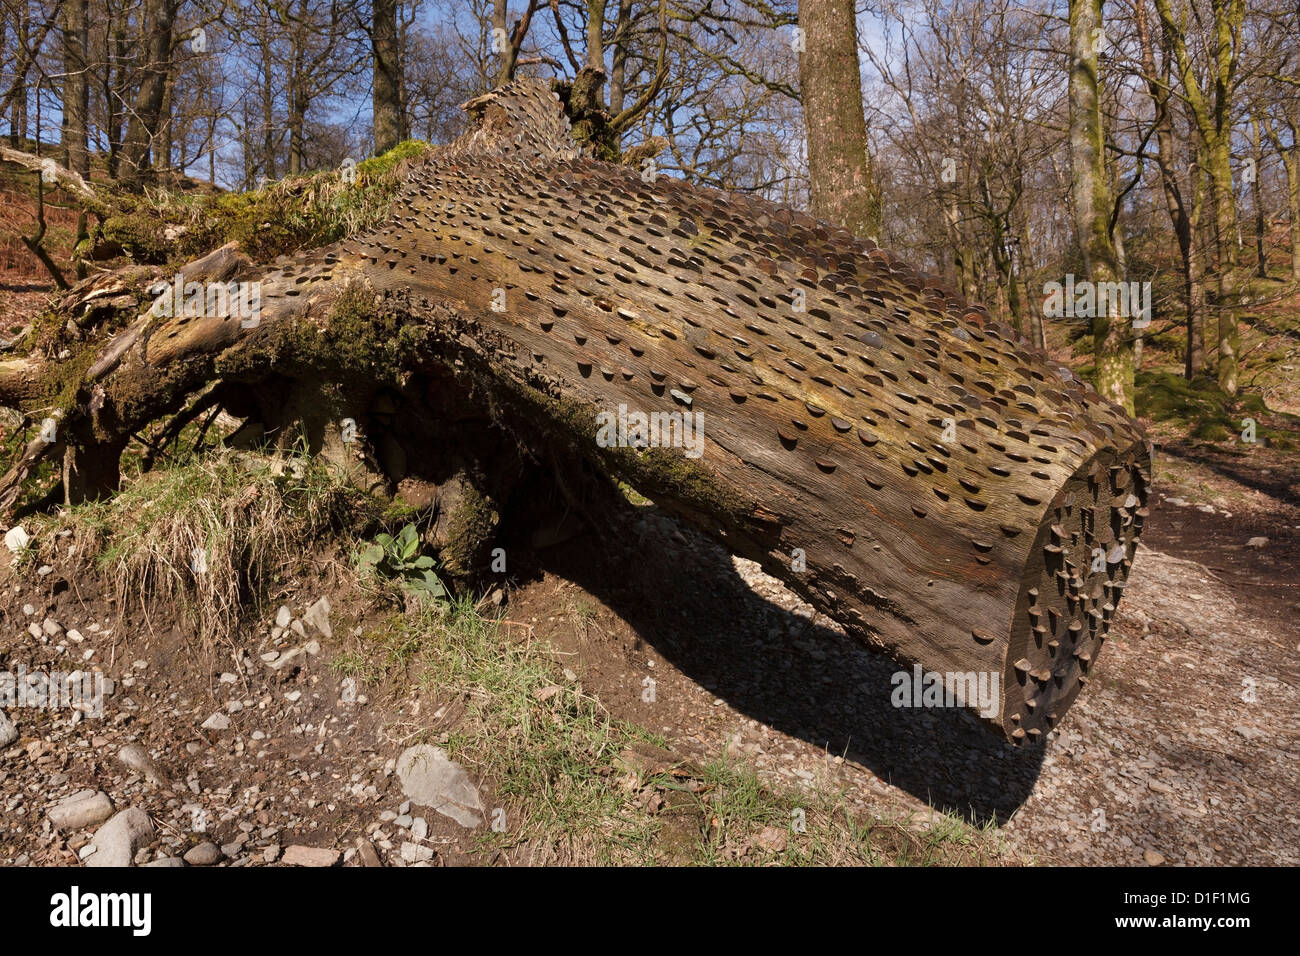 Árbol de dinero - viejo árbol caído tronco cubierto de monedas que han sido martilladas para buena suerte, Elterwater, Cumbria, Inglaterra, Reino Unido. Foto de stock